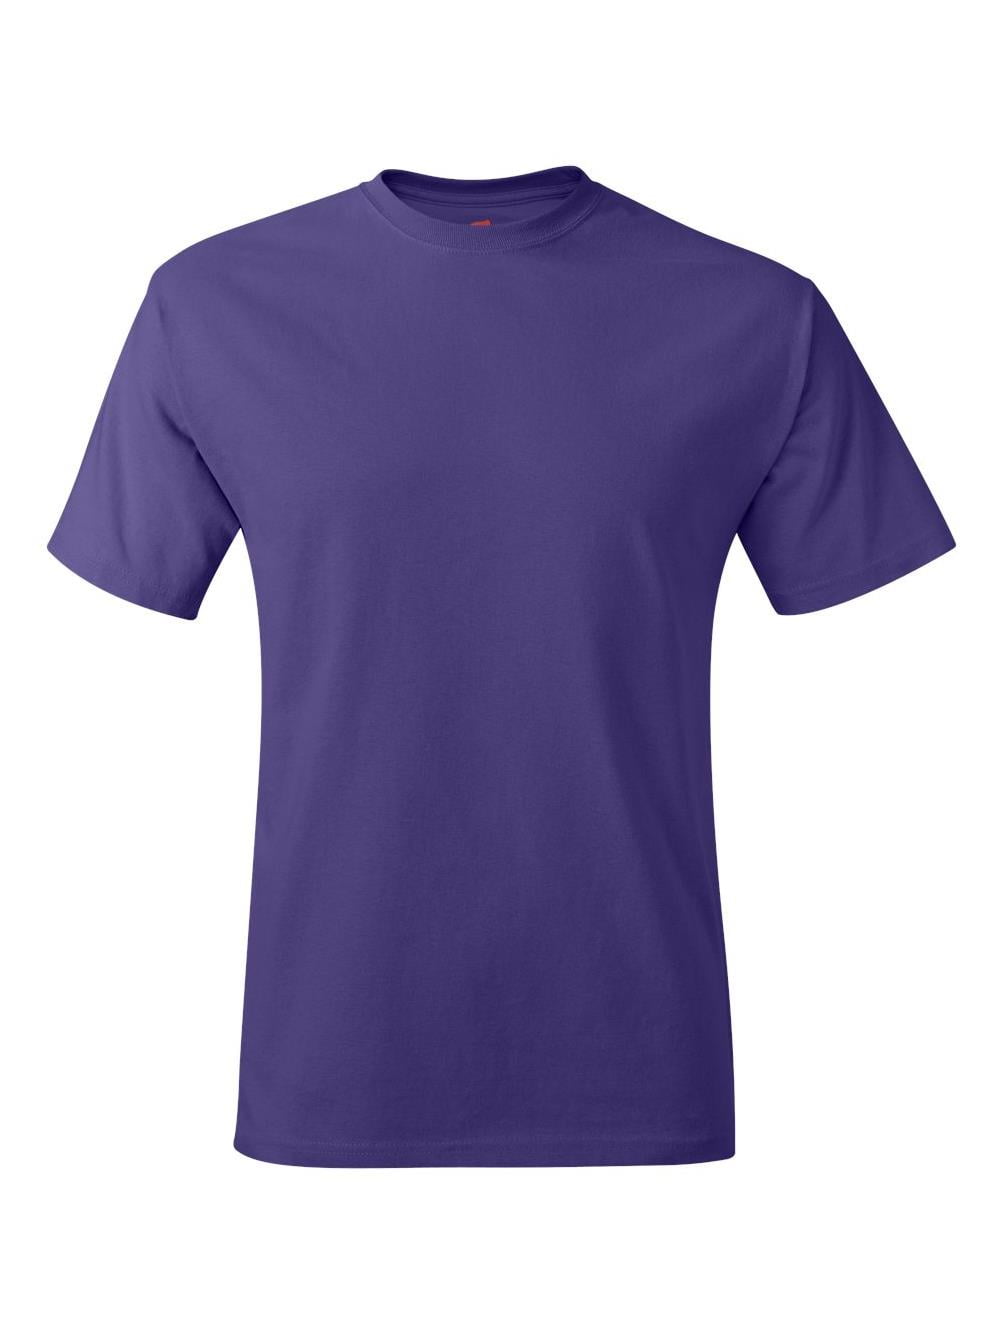 Hanes - 5250 Hanes T-Shirts Tagless T-Shirt - Walmart.com